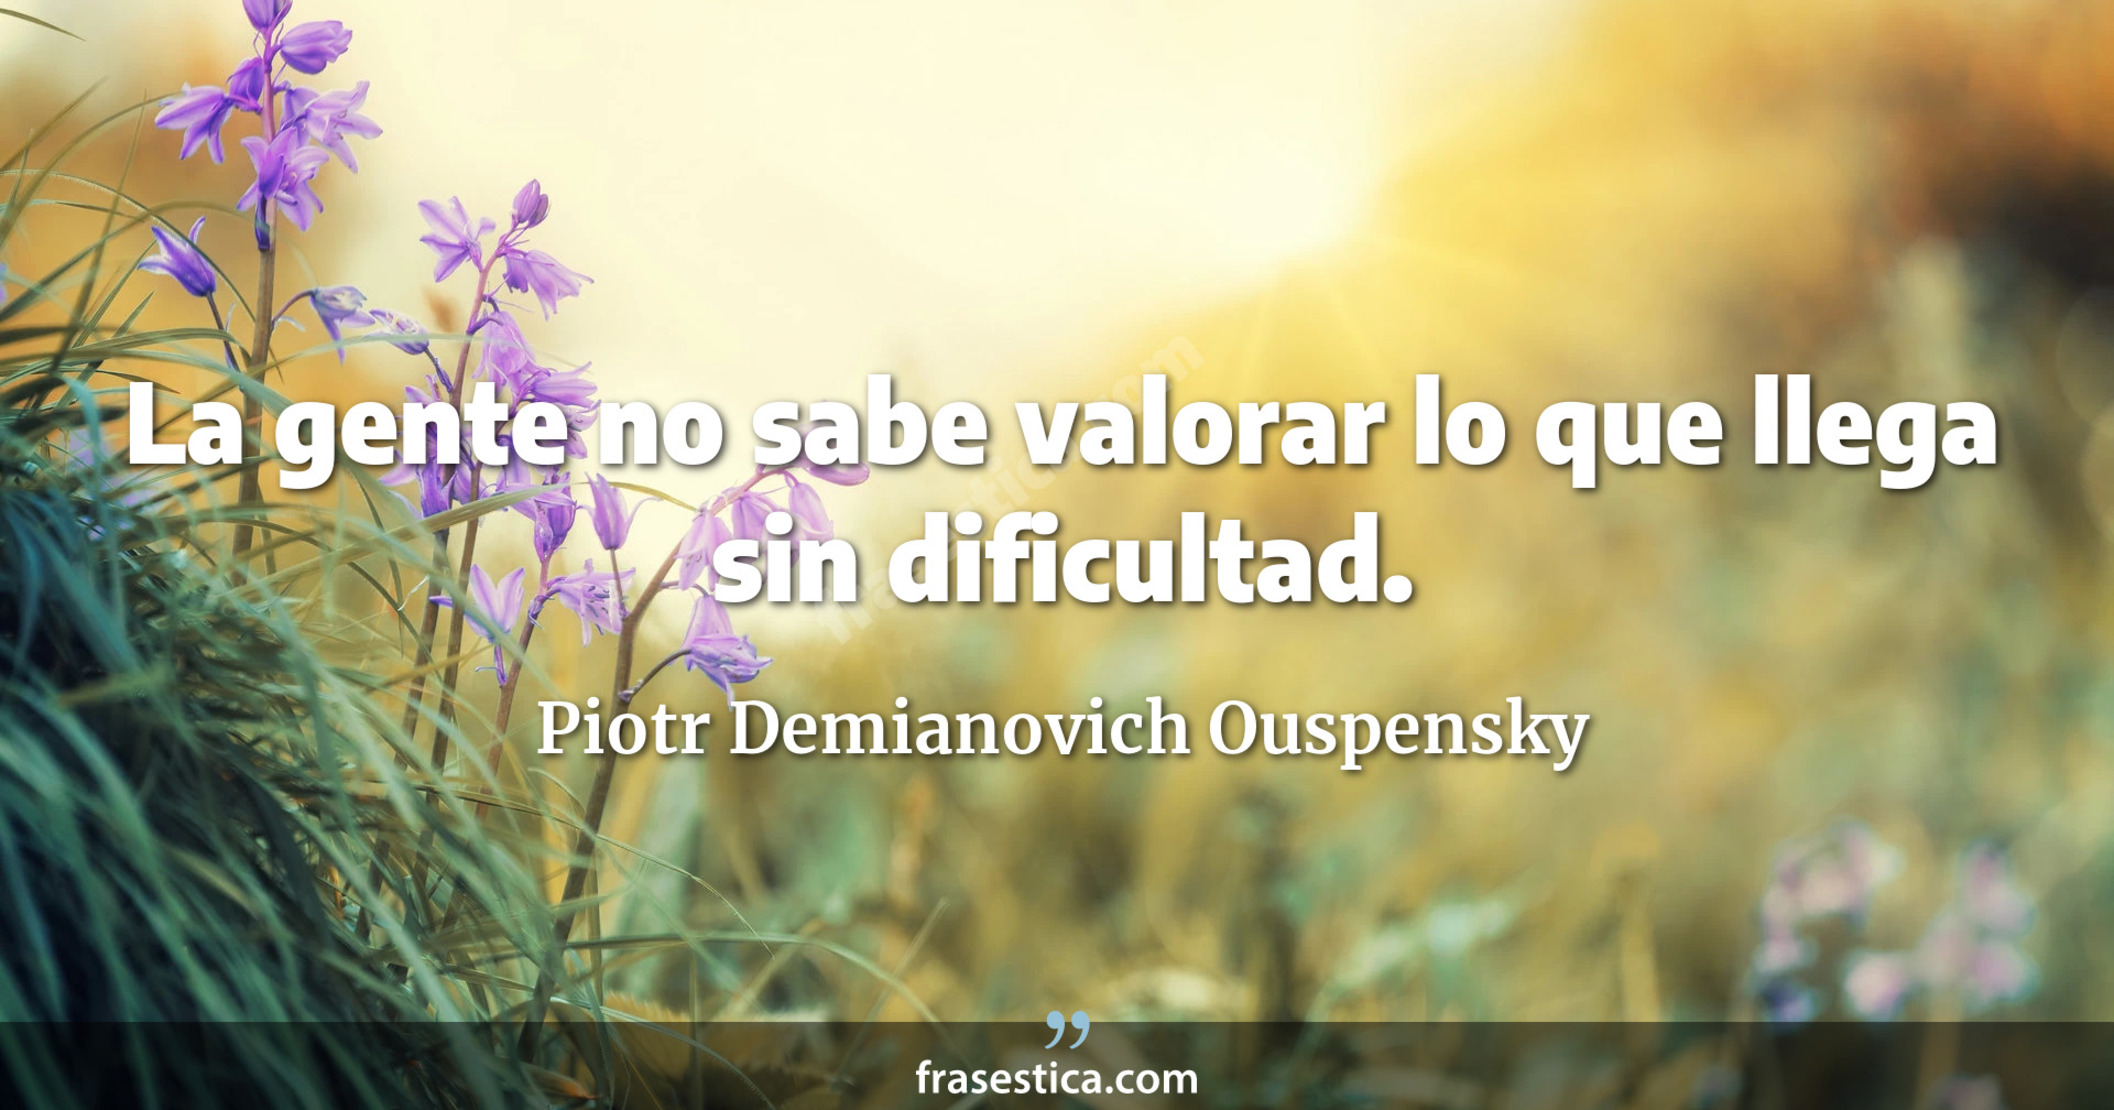 La gente no sabe valorar lo que llega sin dificultad. - Piotr Demianovich Ouspensky